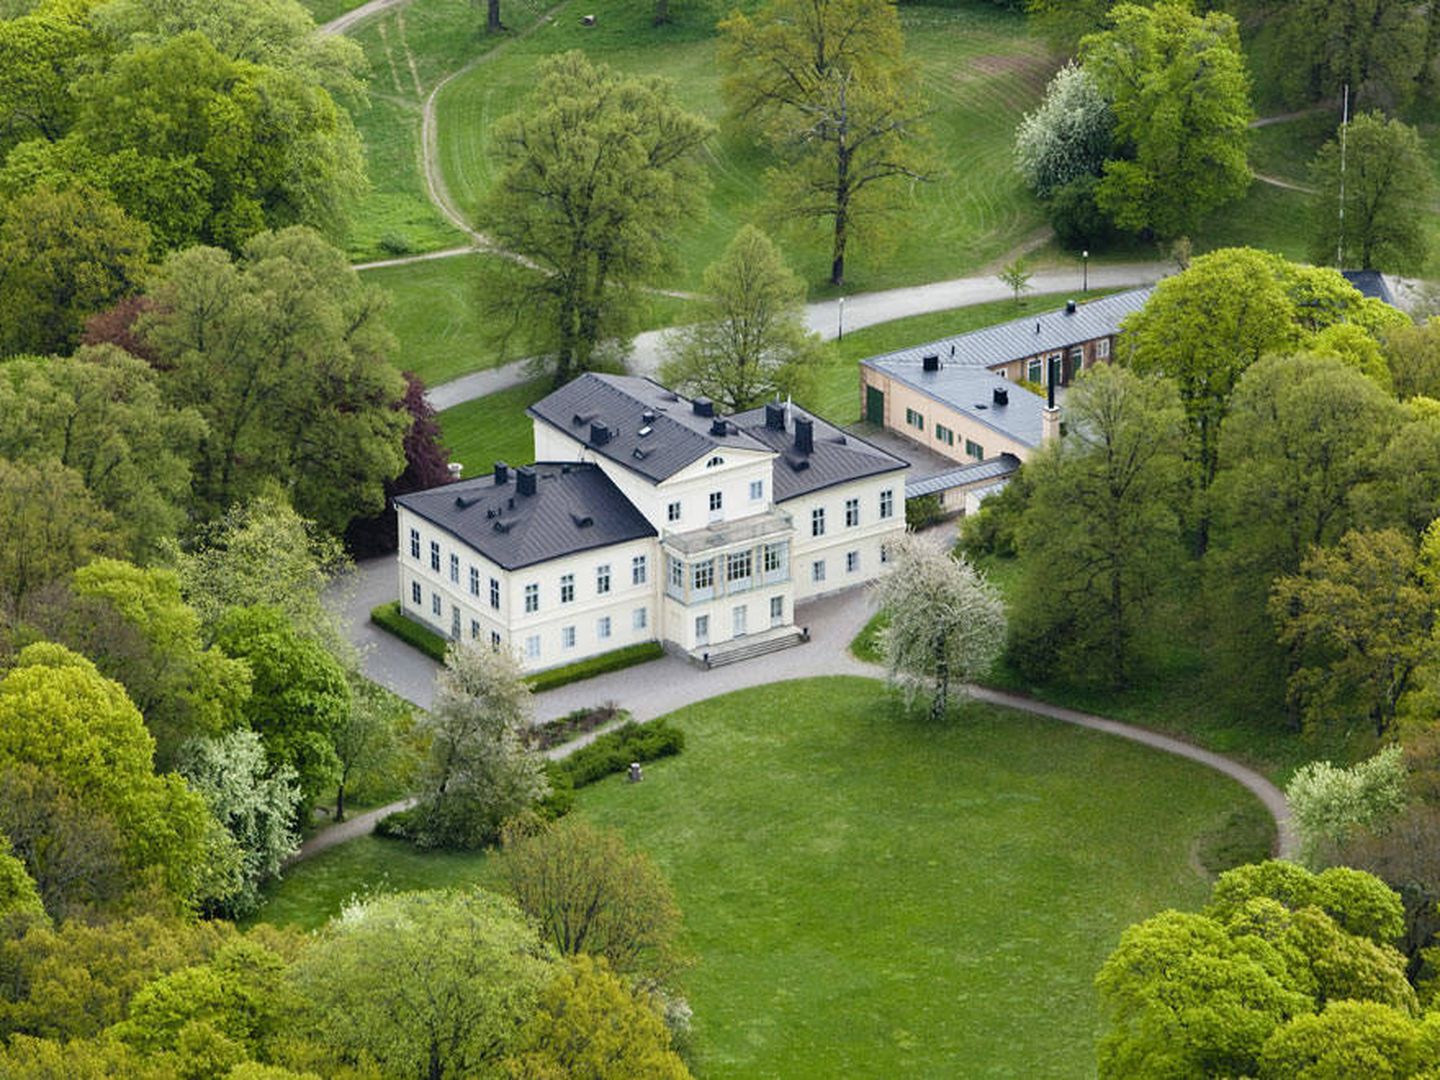 Vista general del palacio de Haga. (Klas Sjöberg / Casa Real de Suecia)